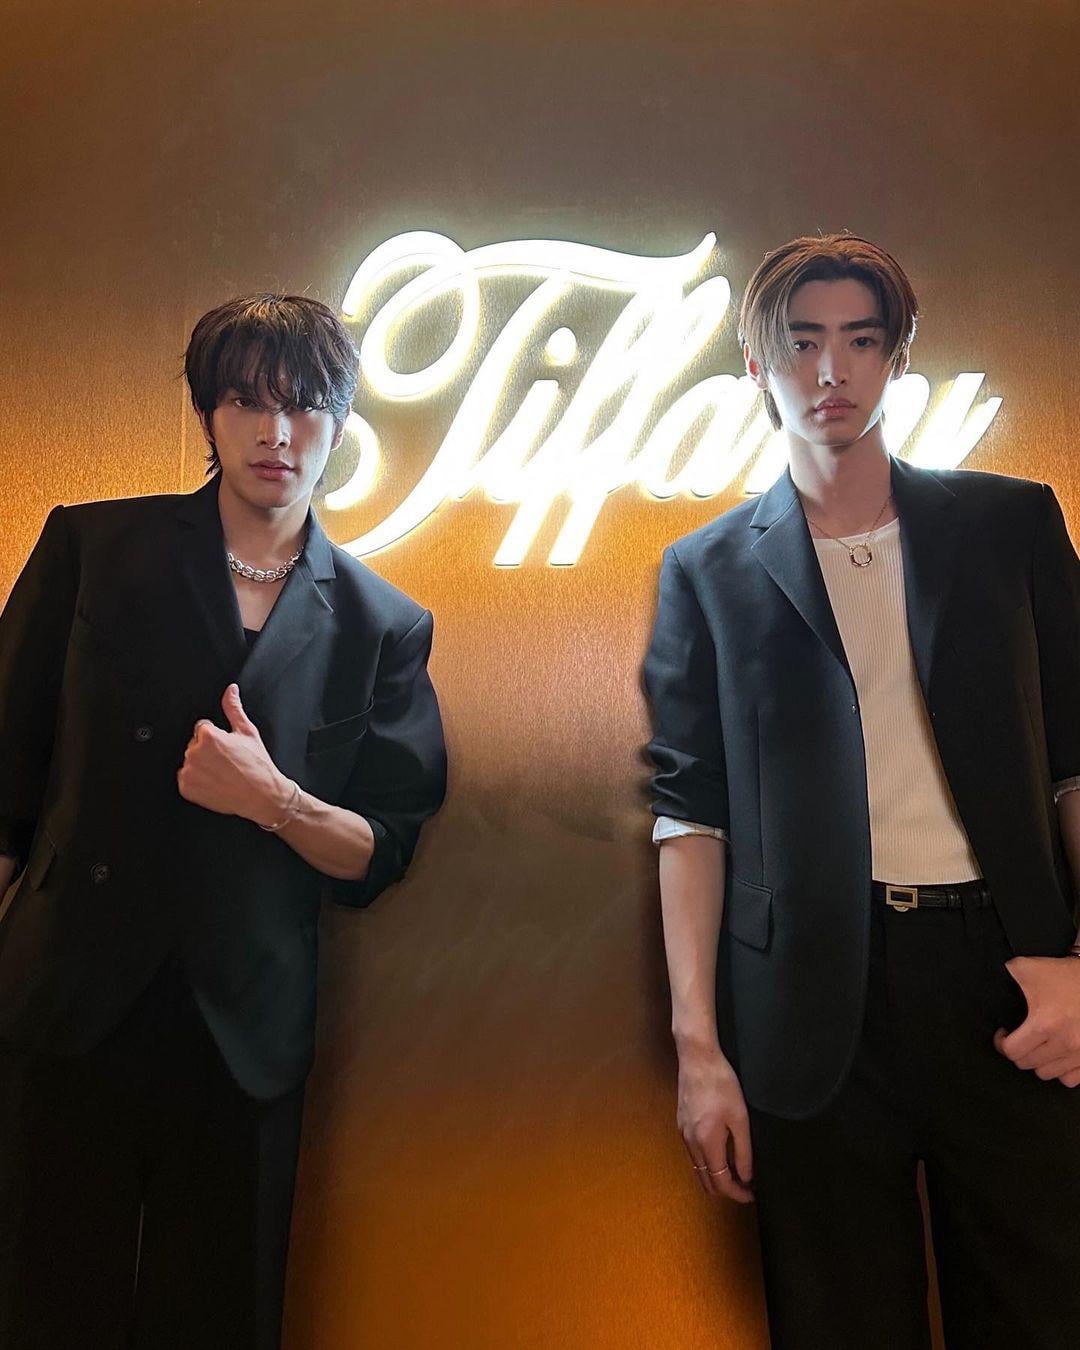 230912 Instagram: Jake & Sunghoon